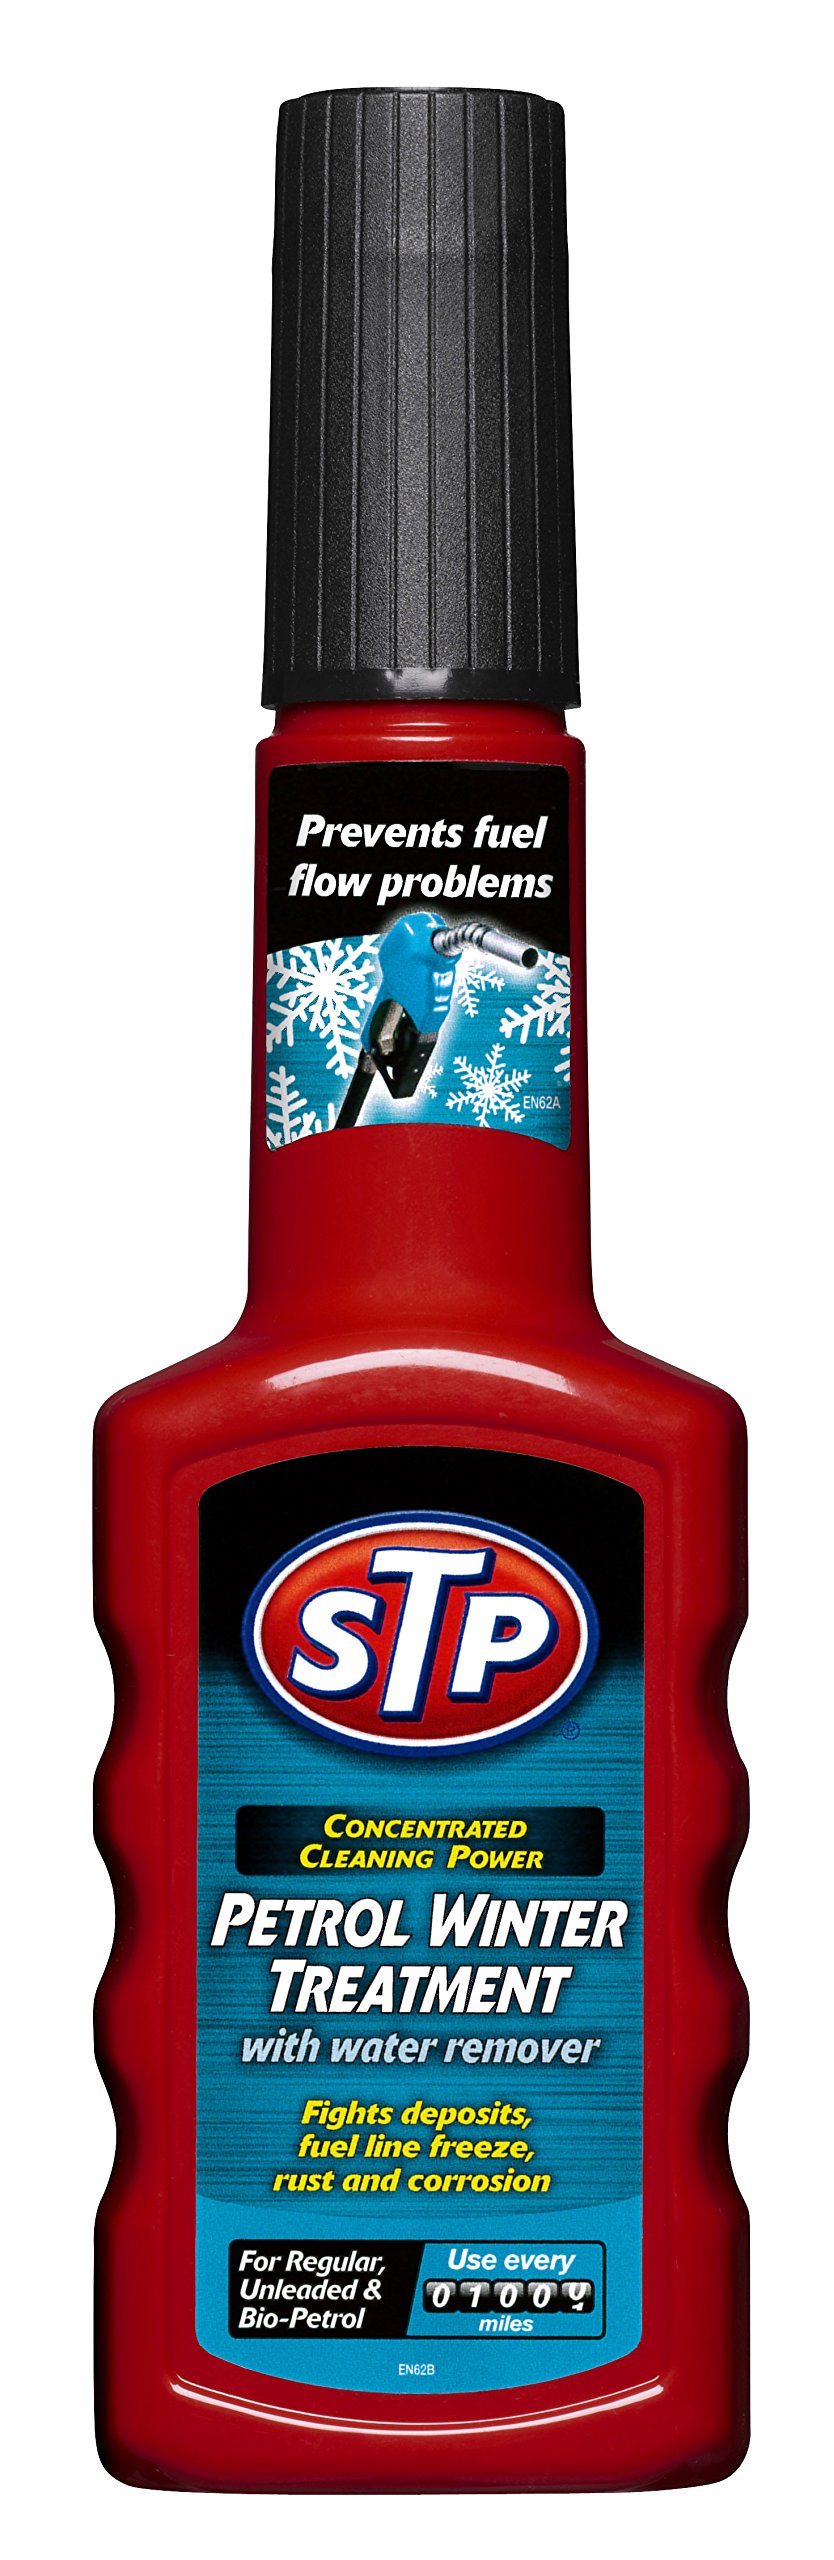 STP gst52200en Petrol Winter Behandlung – 200 ml von STP